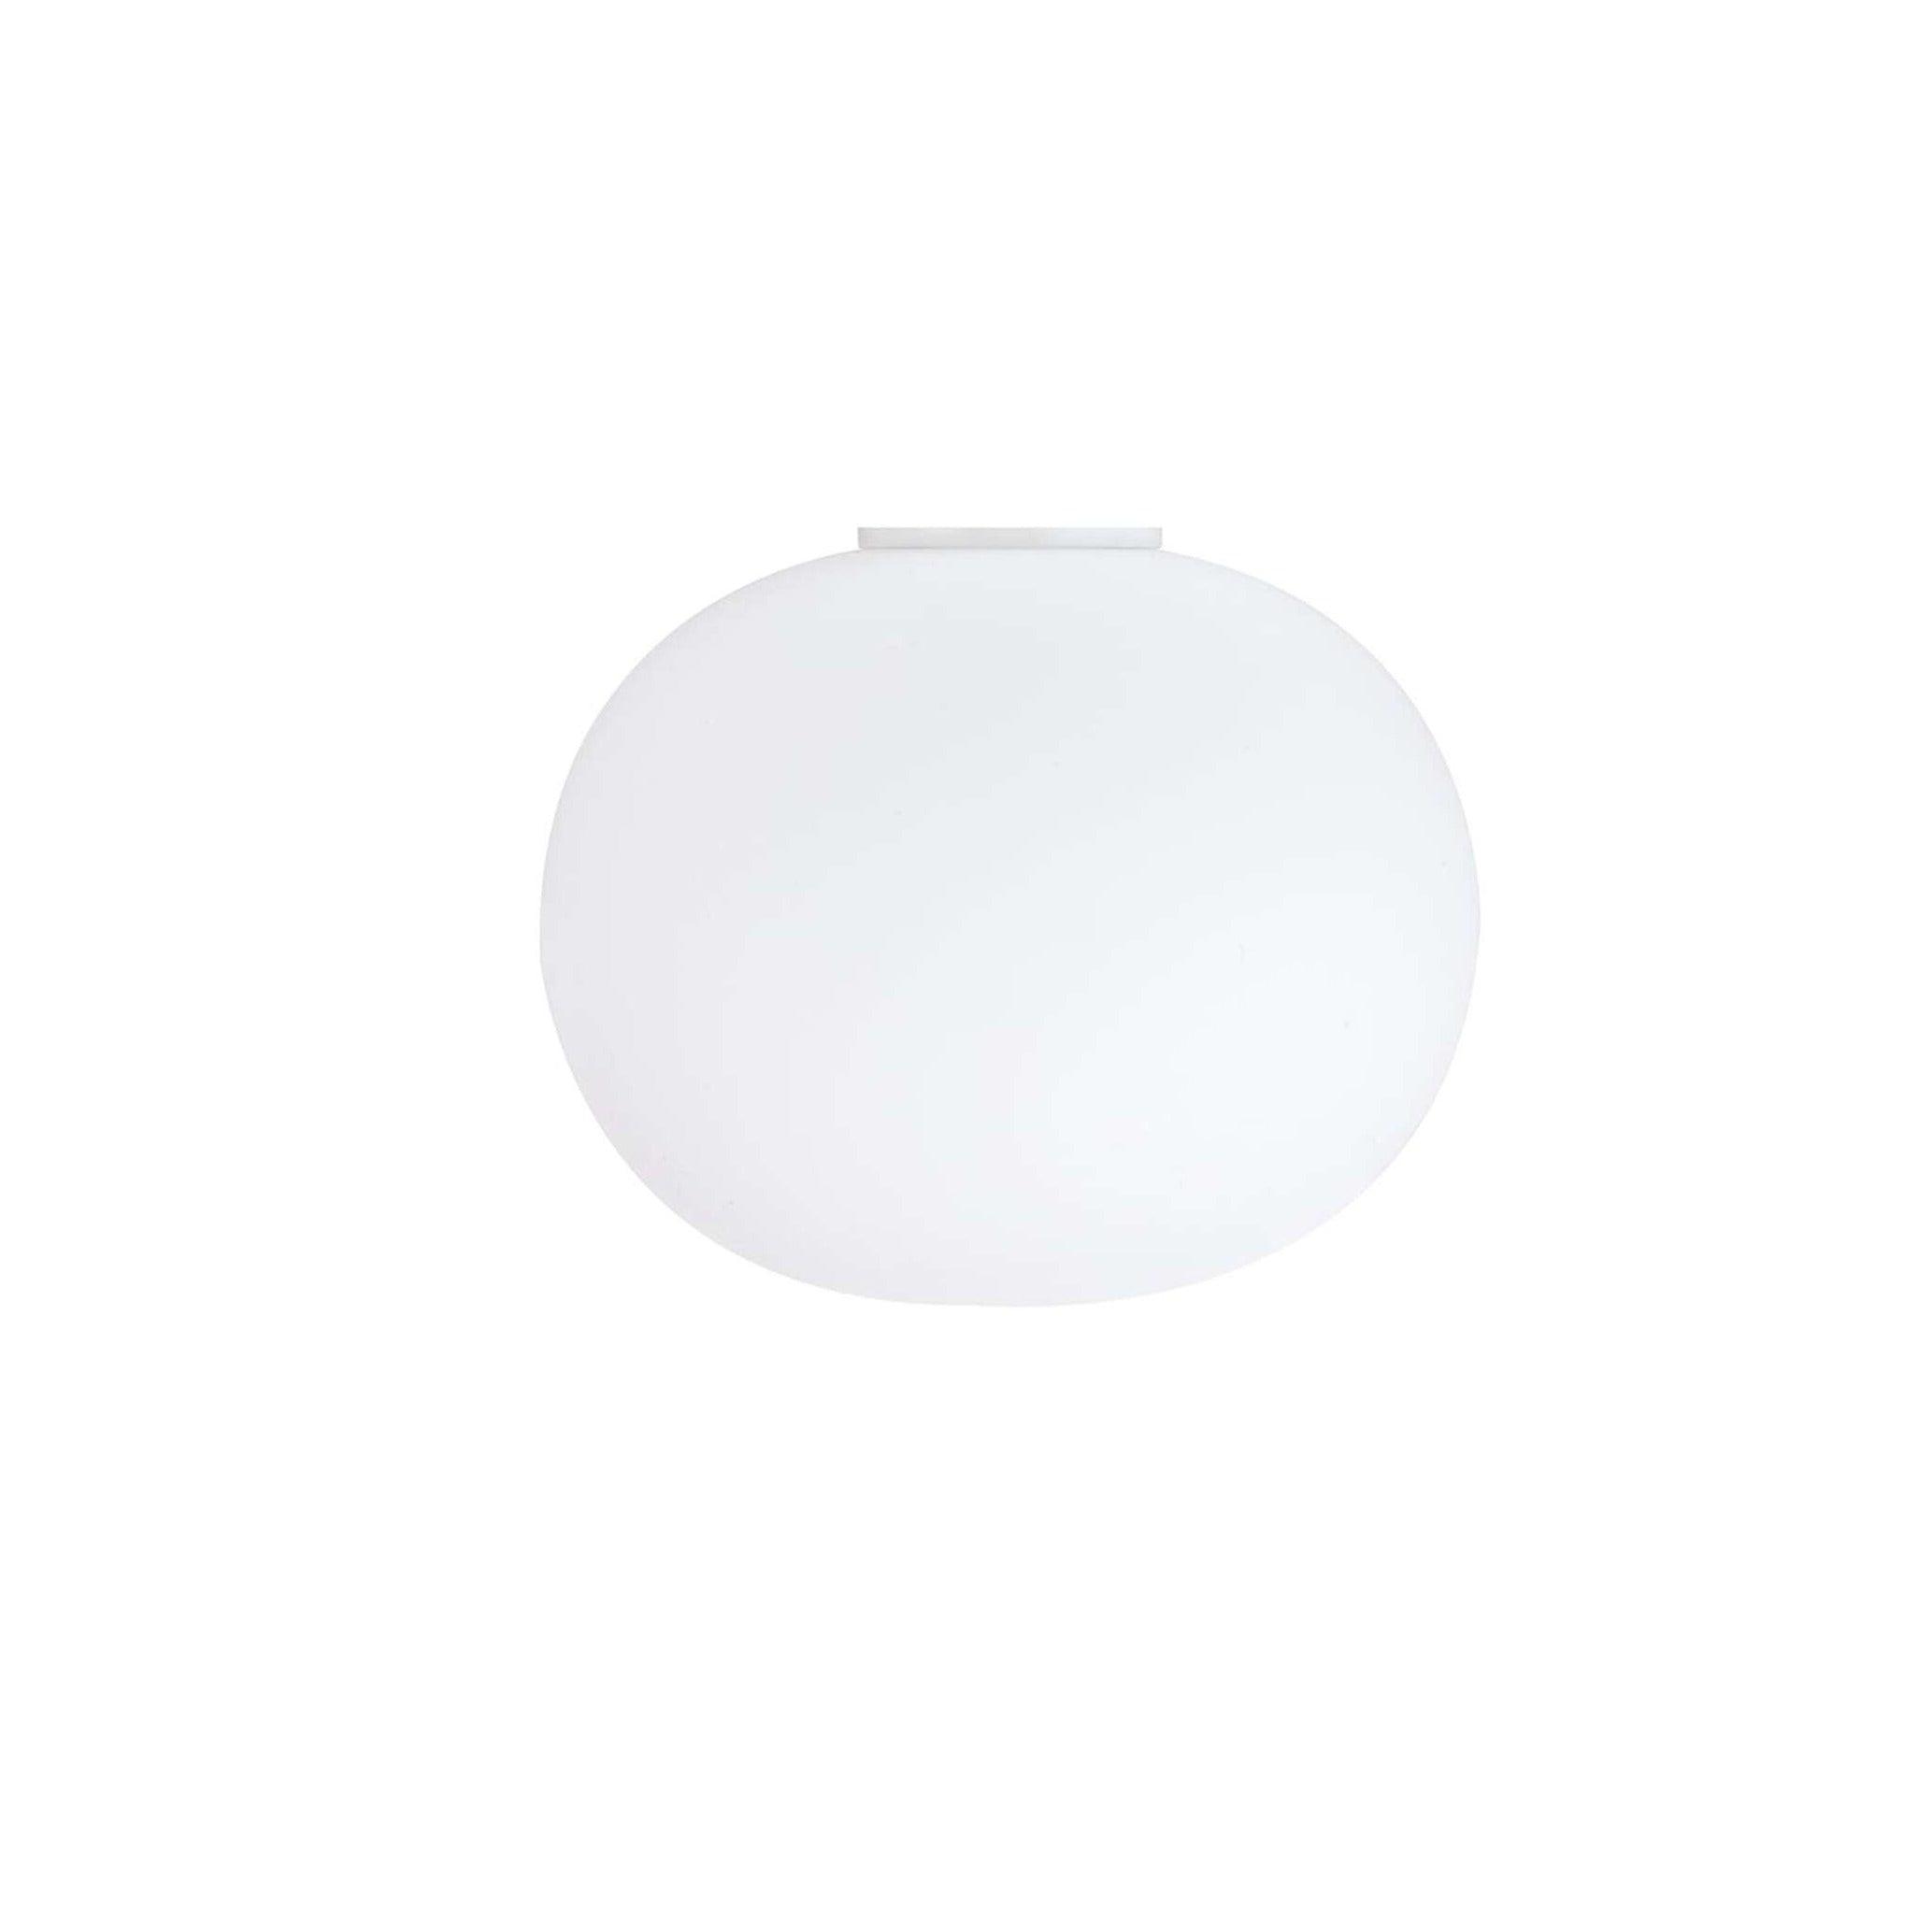 Lampa sufitowa GLO-BALL biały Flos M bez żarówki  Eye on Design